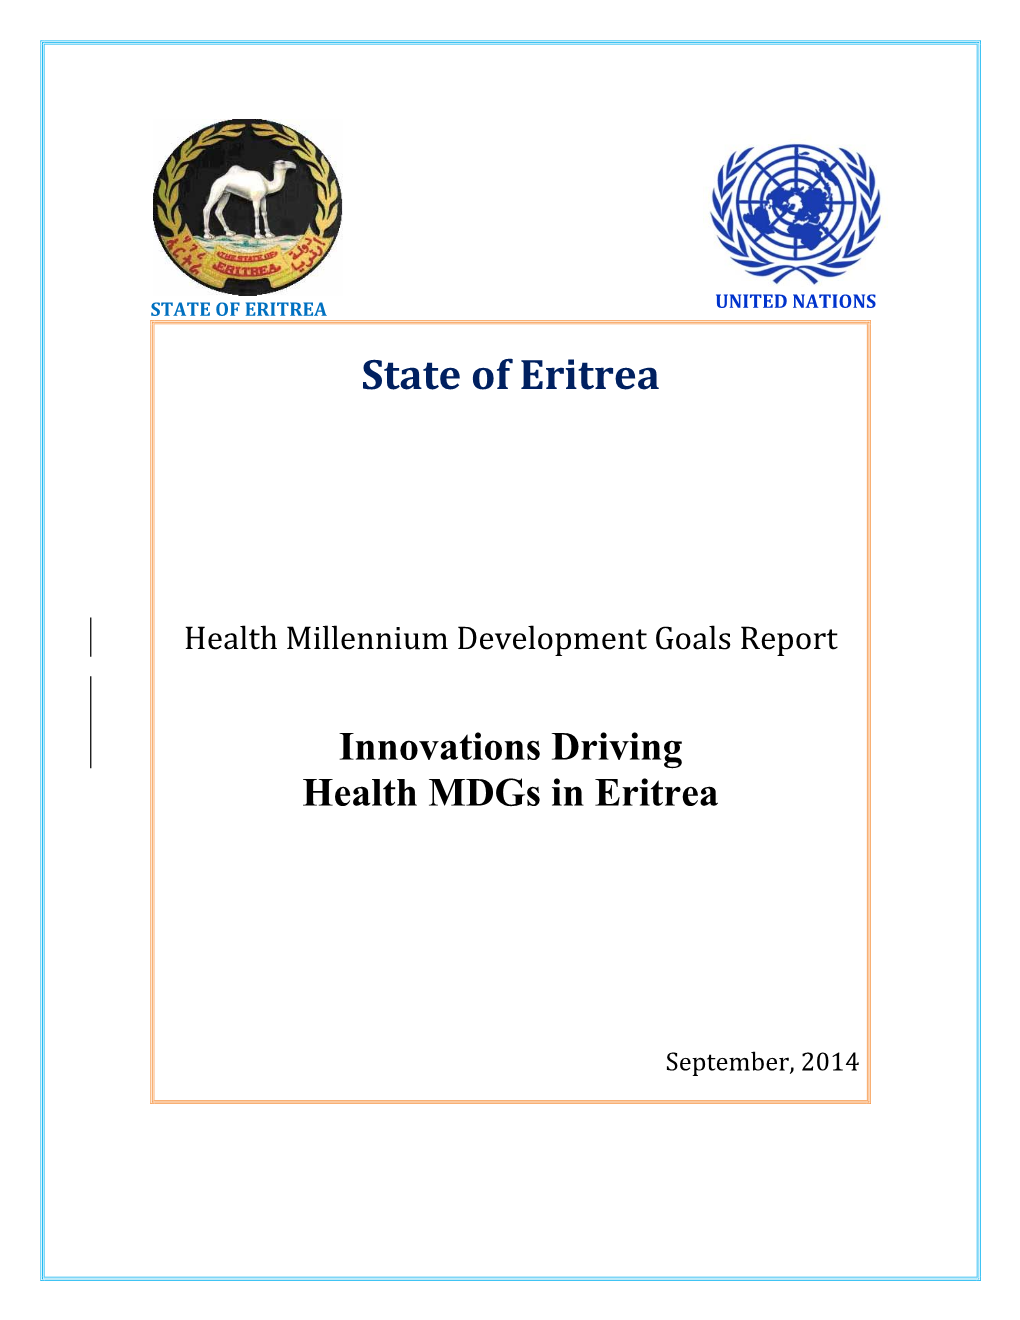 Eritrea Health Mdgs Report 2014.Pdf